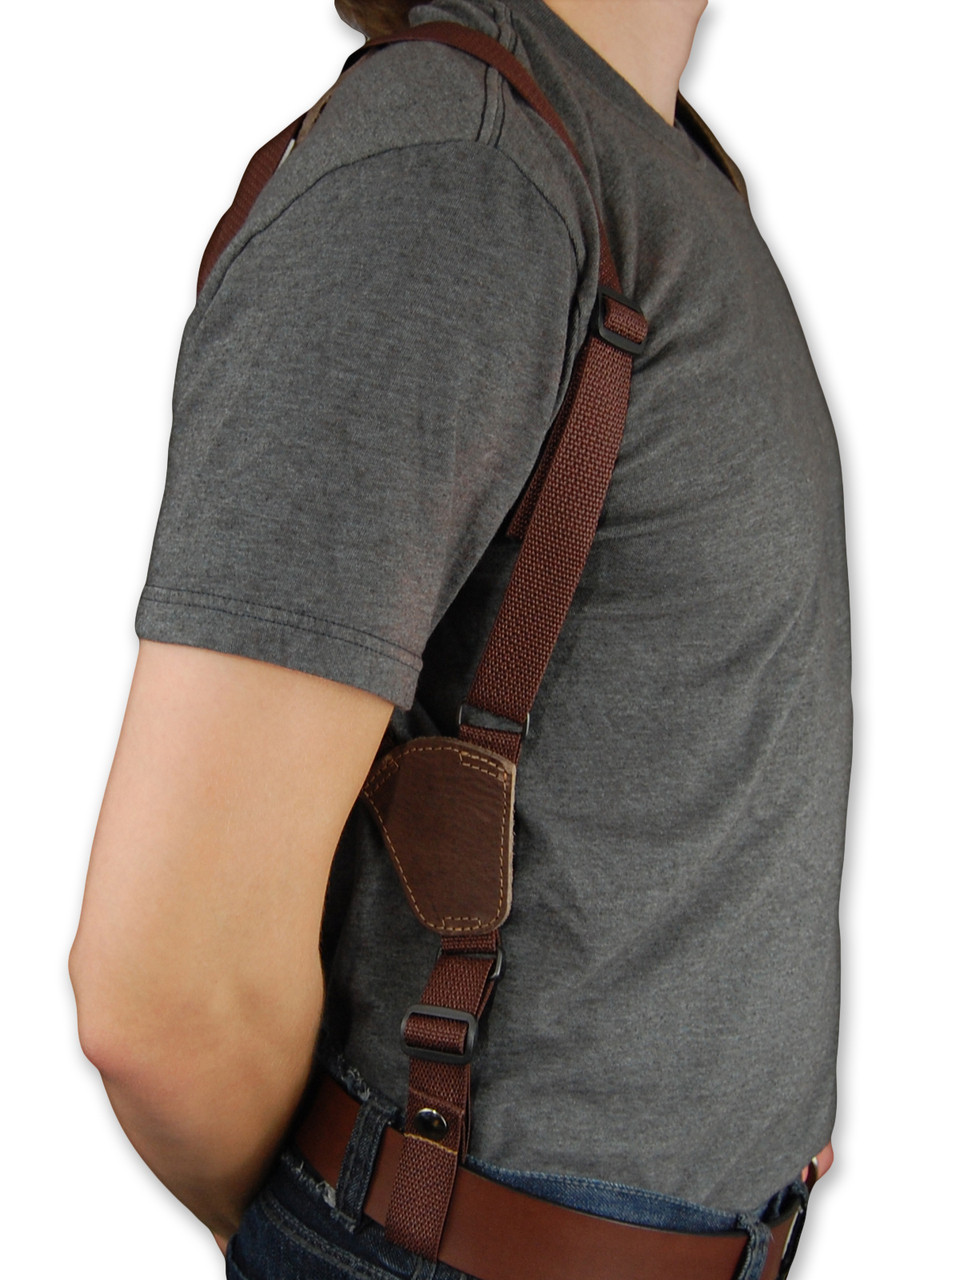 belt tie down for shoulder holster